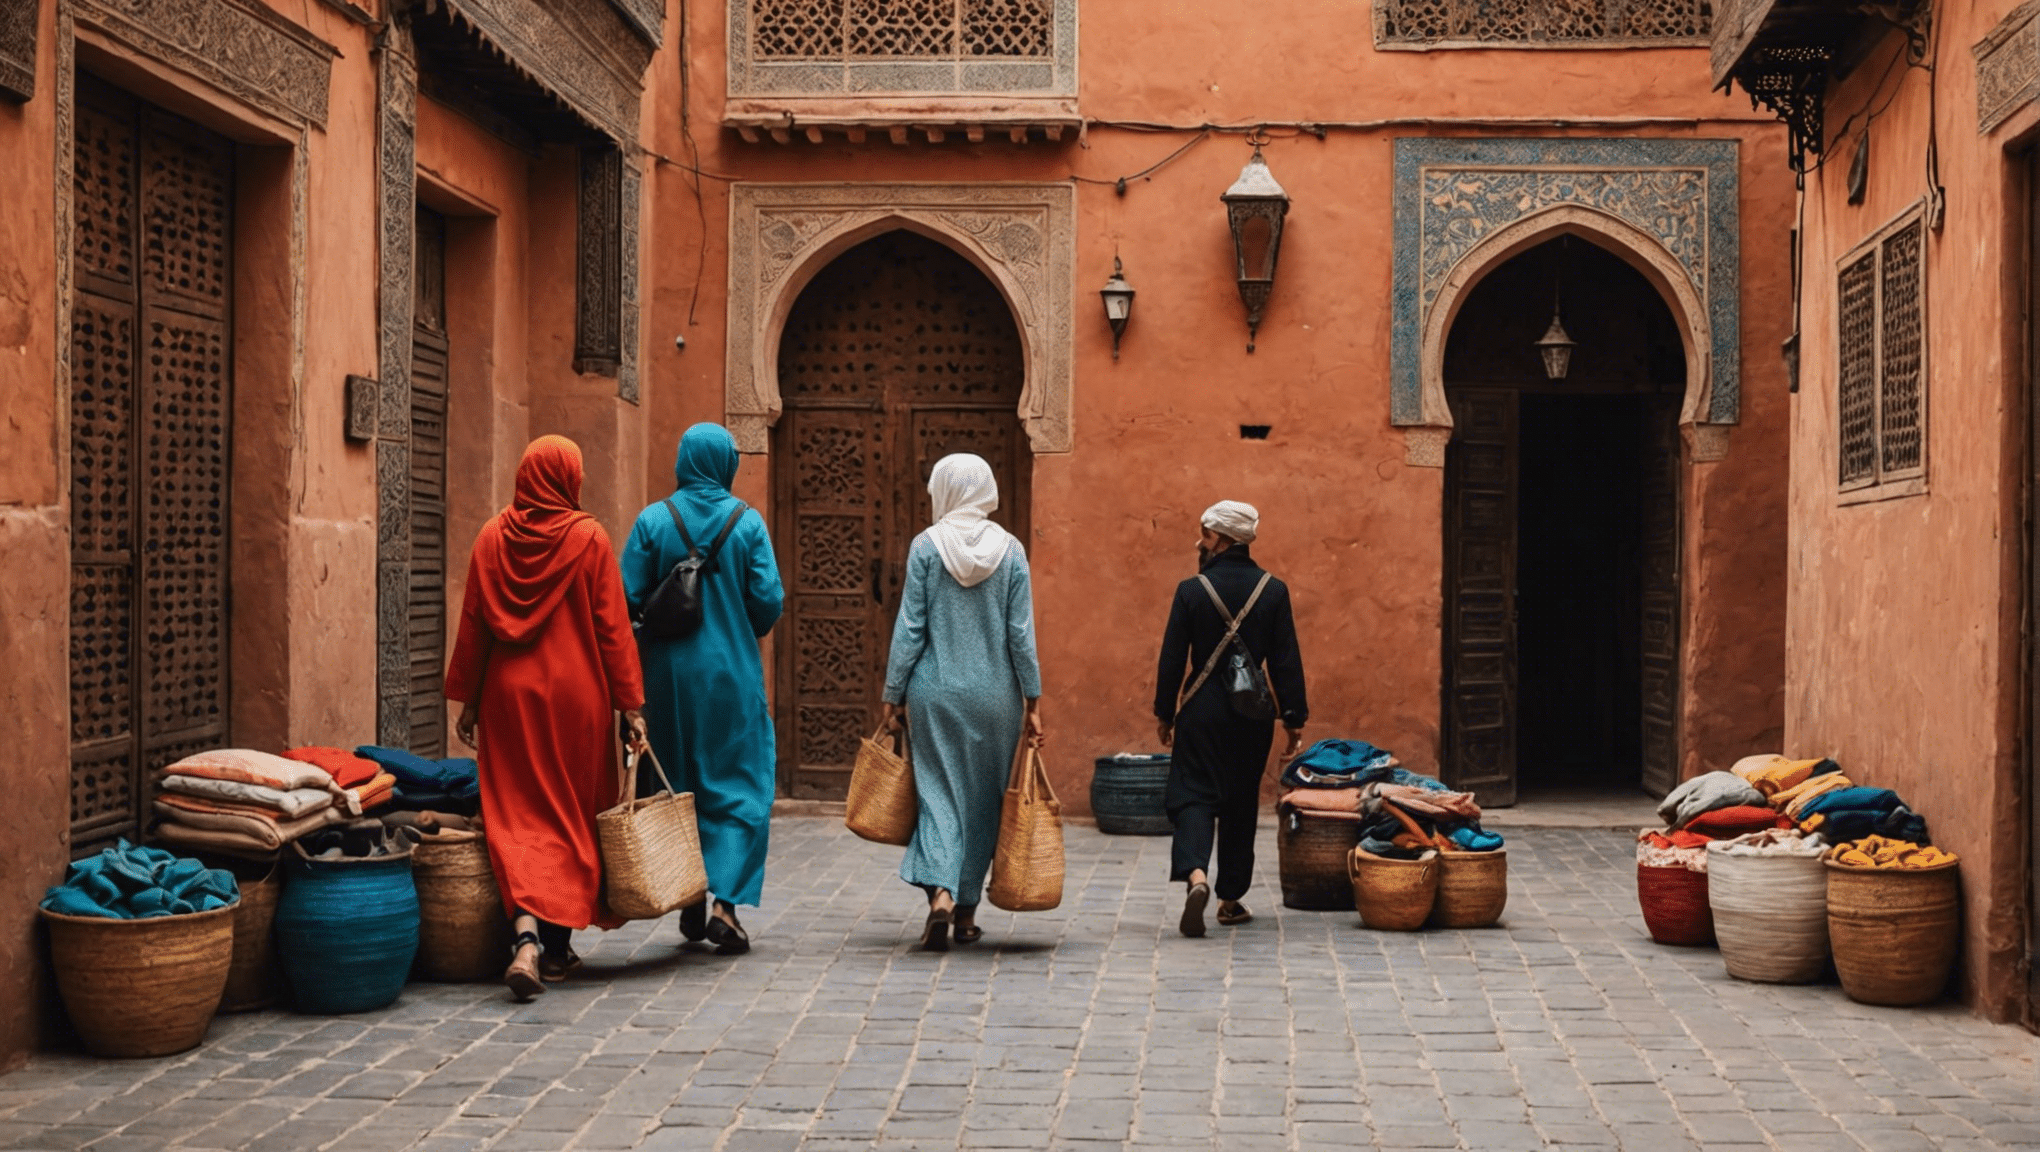 Entdecken Sie wichtige Packtipps für ein unvergessliches April-Abenteuer in Marrakesch! Von leichter Kleidung bis hin zu unverzichtbaren Accessoires – machen Sie mit unserem fachkundigen Packratgeber das Beste aus Ihrer Reise.